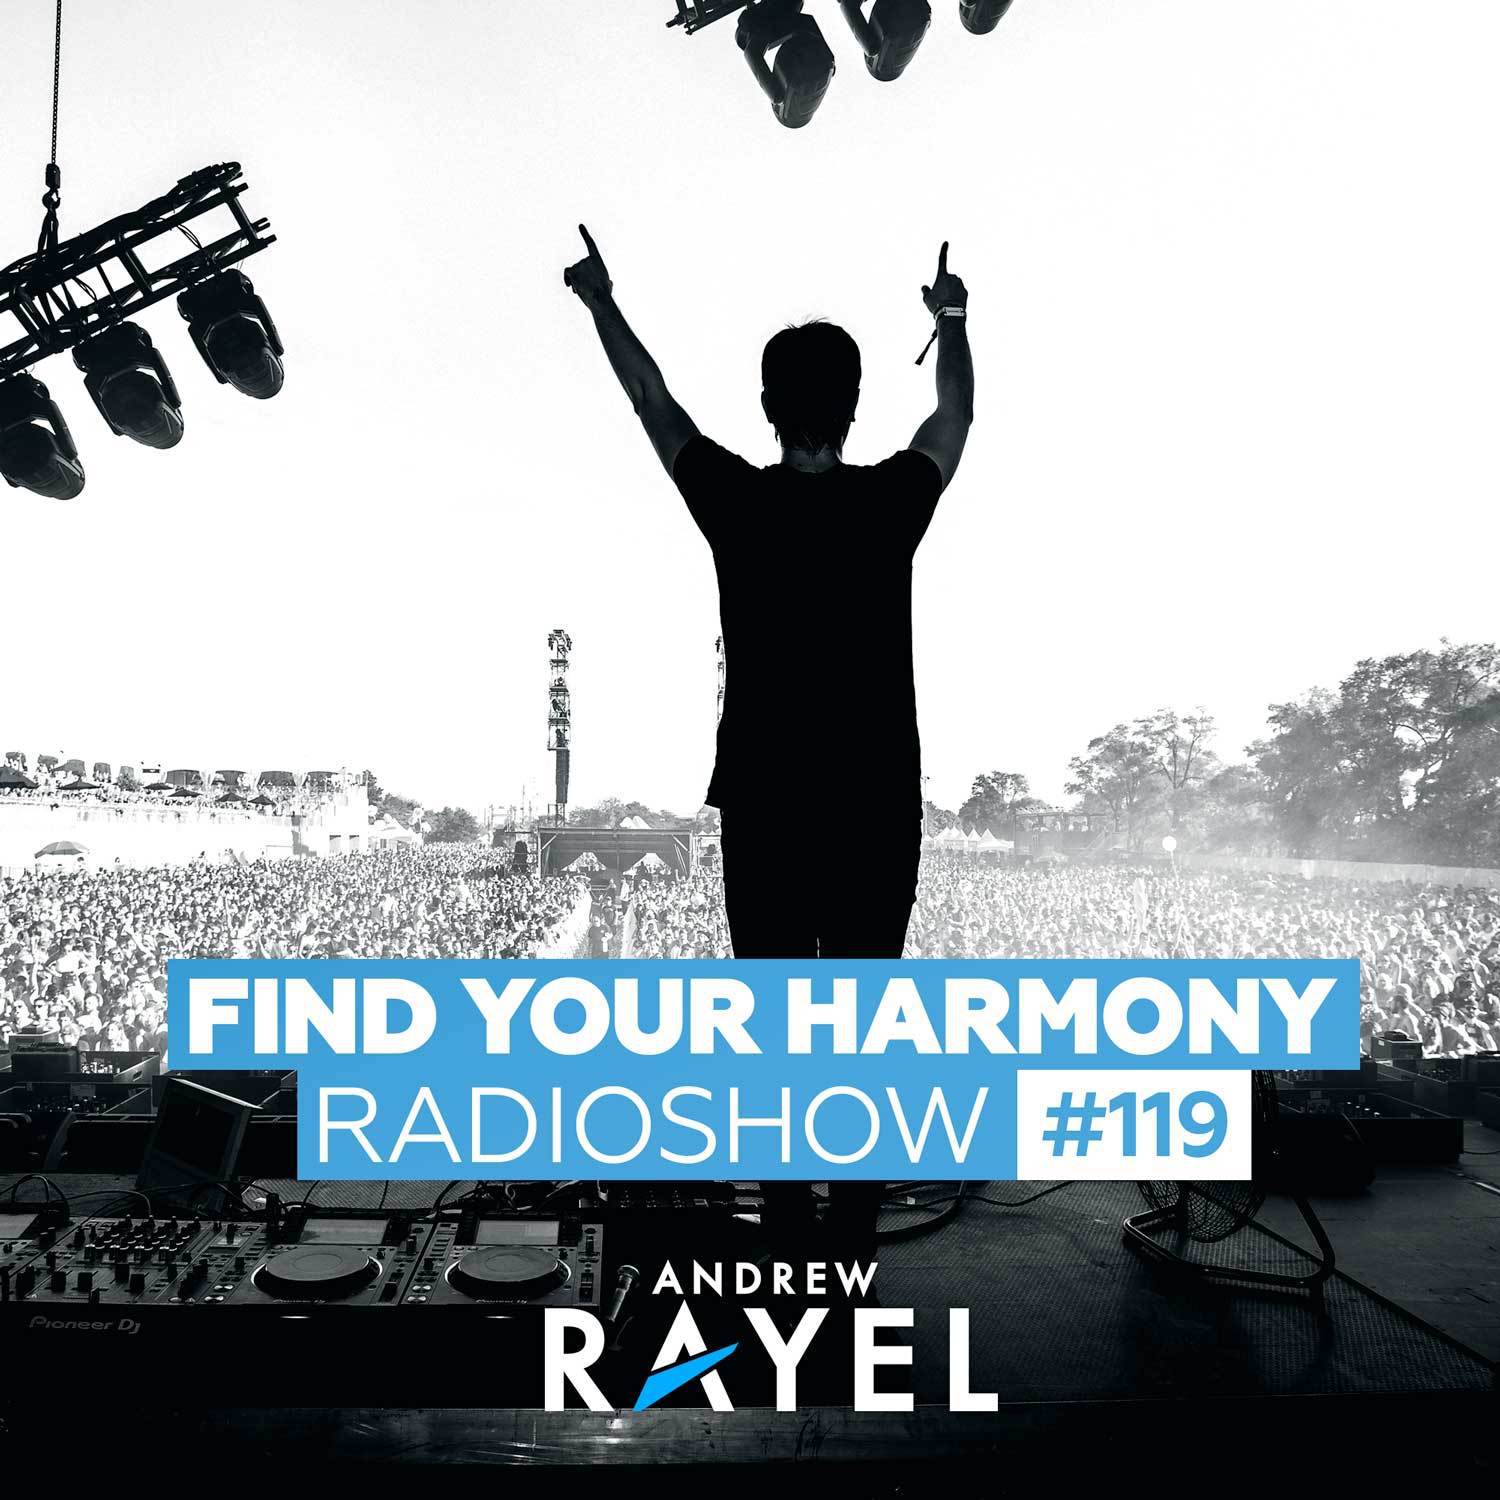 Find Your Harmony Radioshow #119